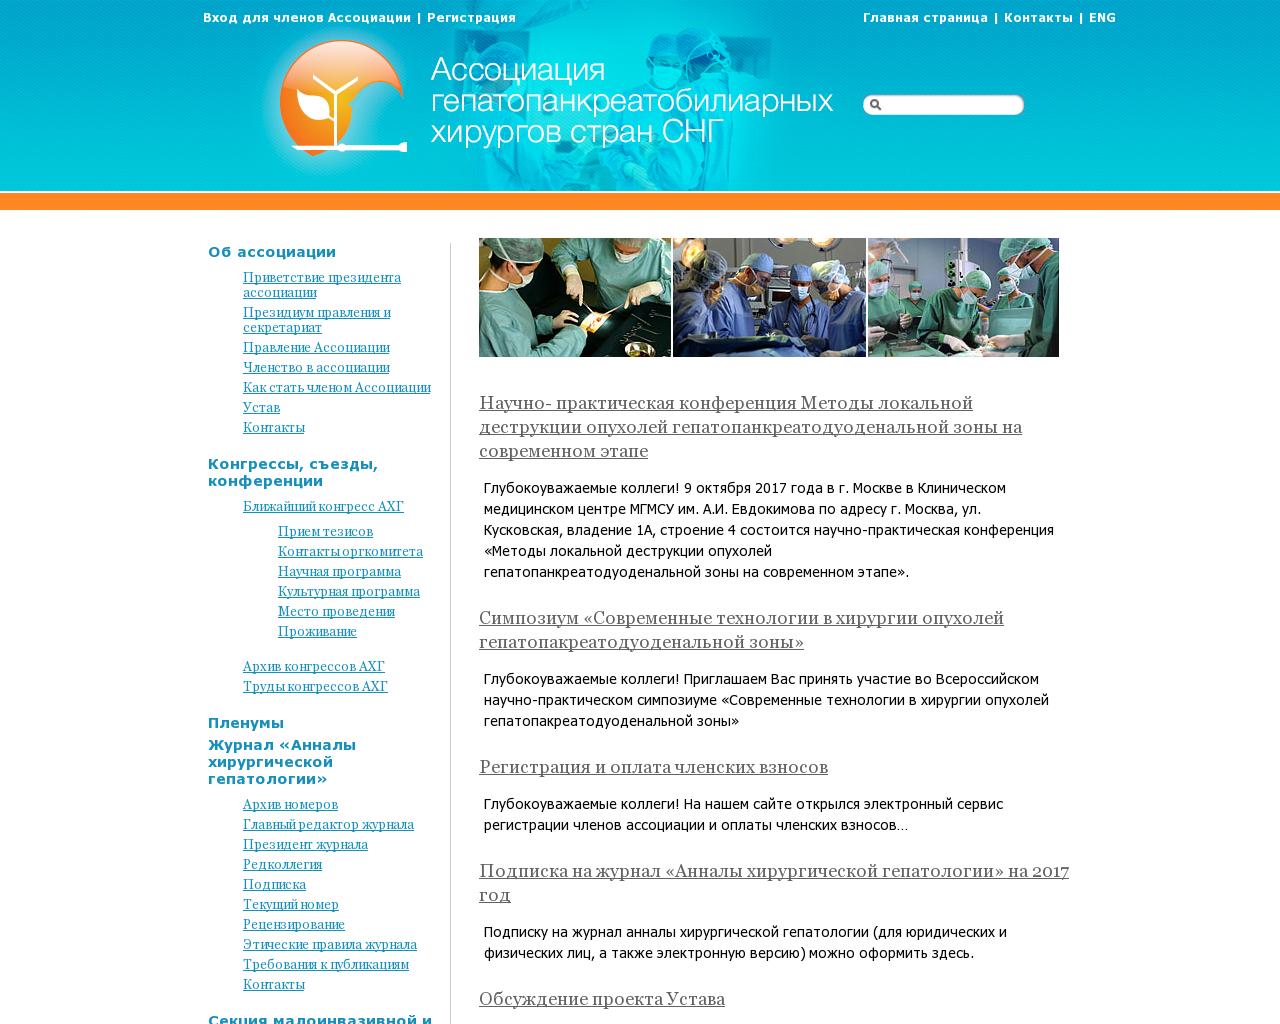 Изображение сайта hepatoassociation.ru в разрешении 1280x1024